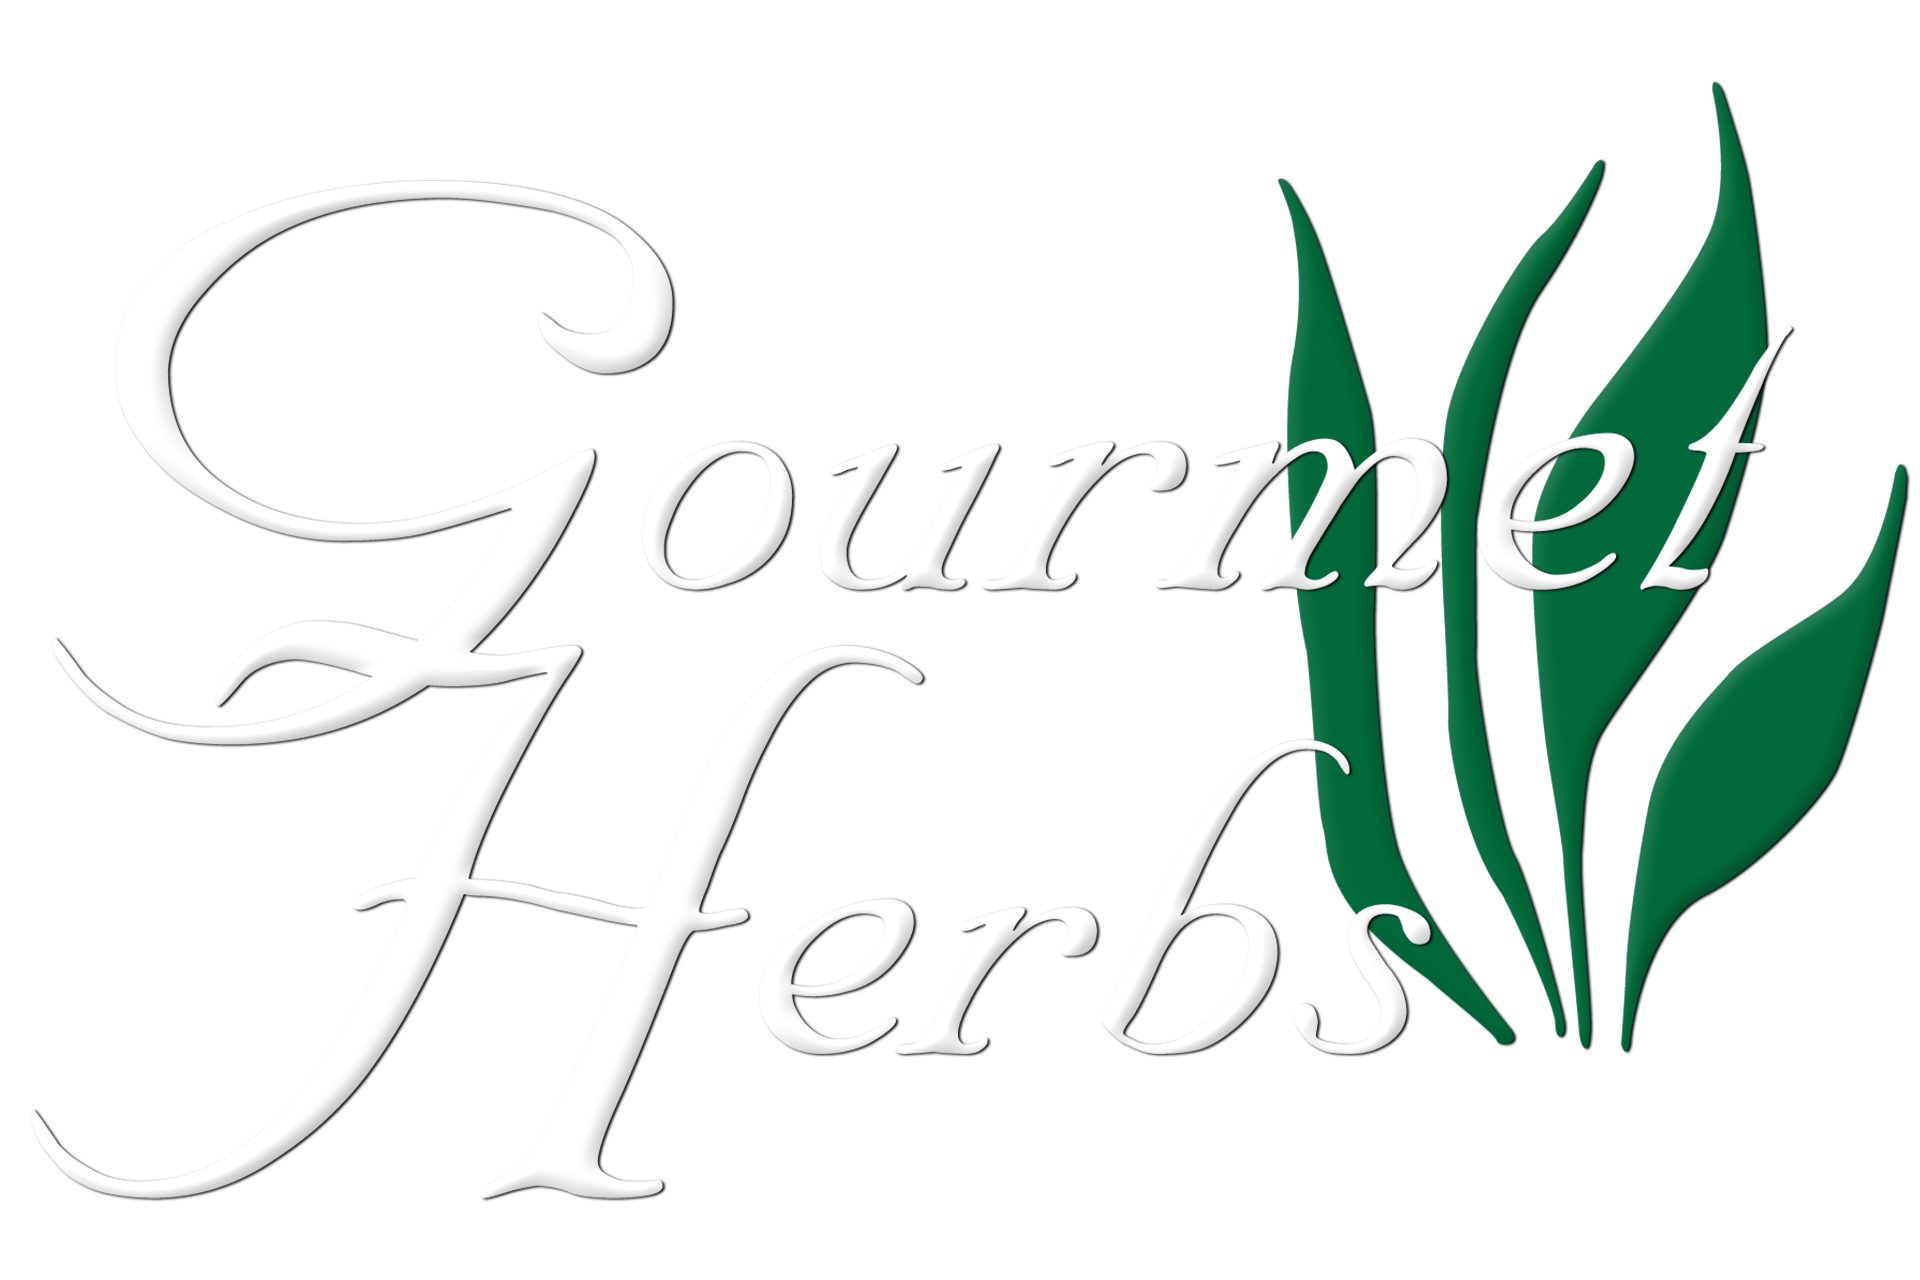 Gourmet Herbs